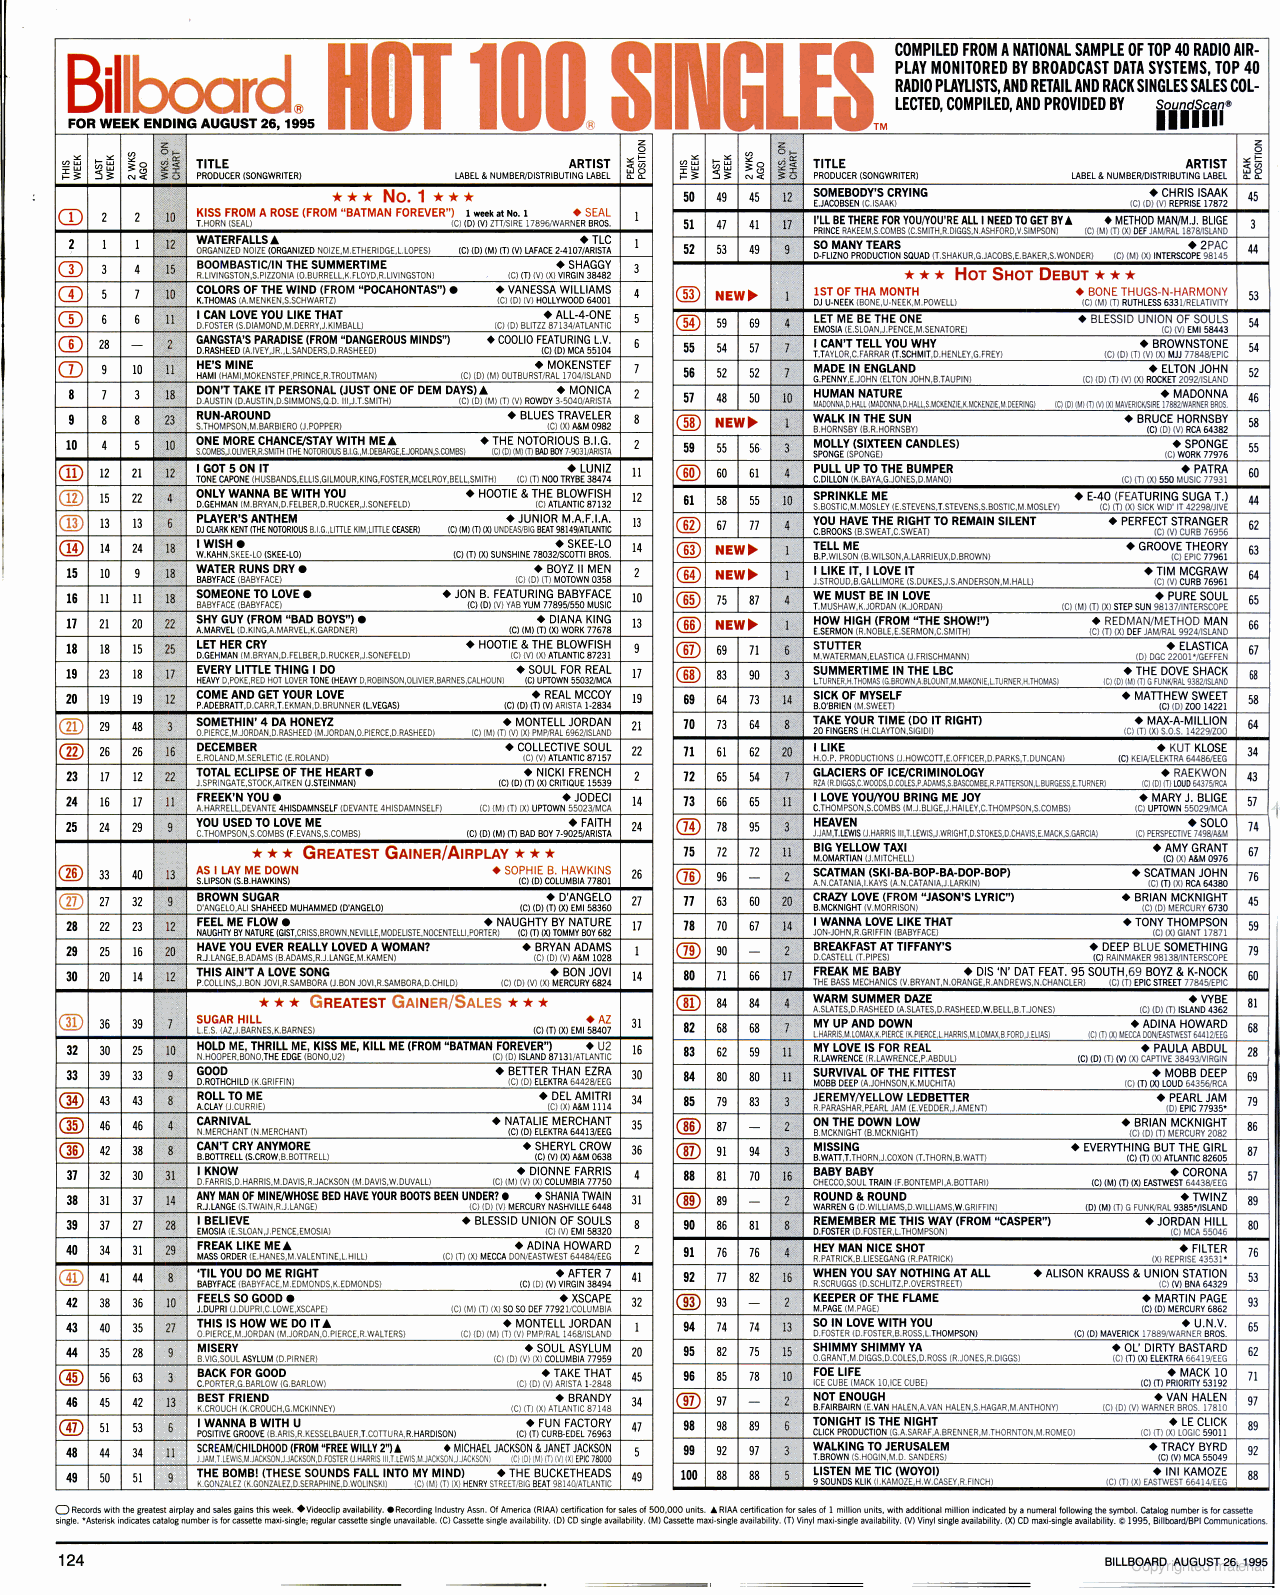 Charts 1995